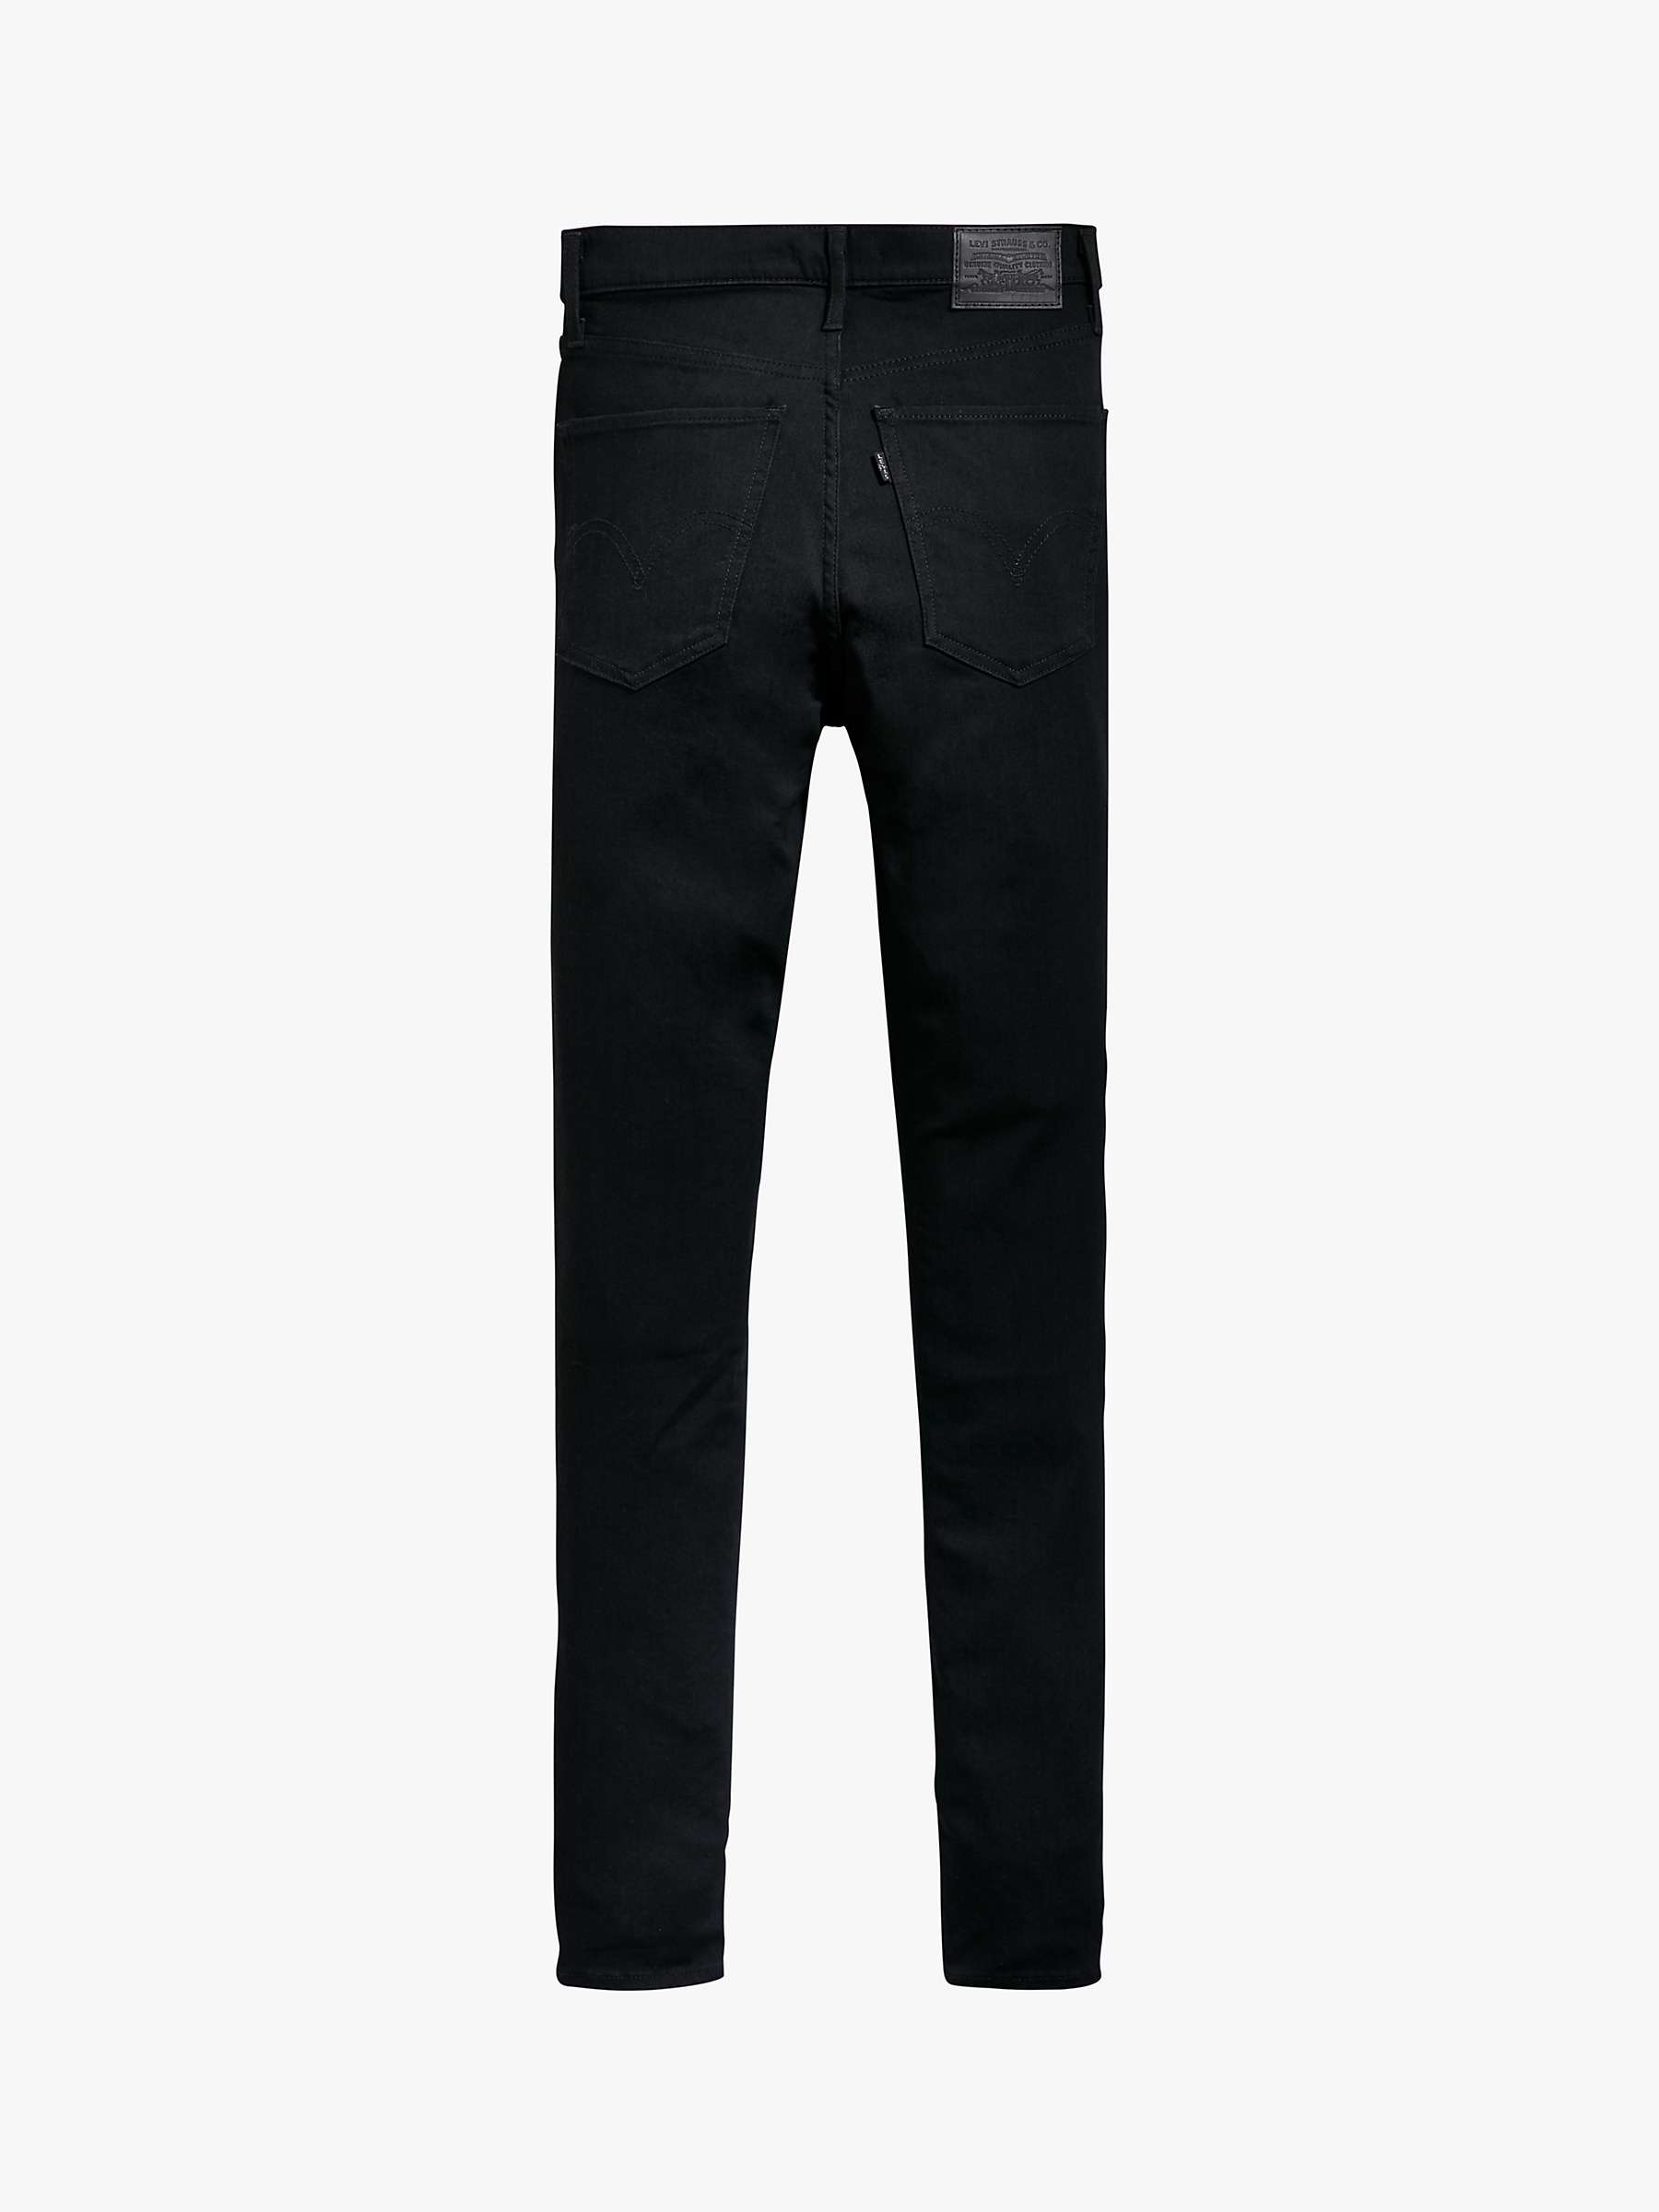 Buy Levi's Mile High Super Skinny Jeans Online at johnlewis.com